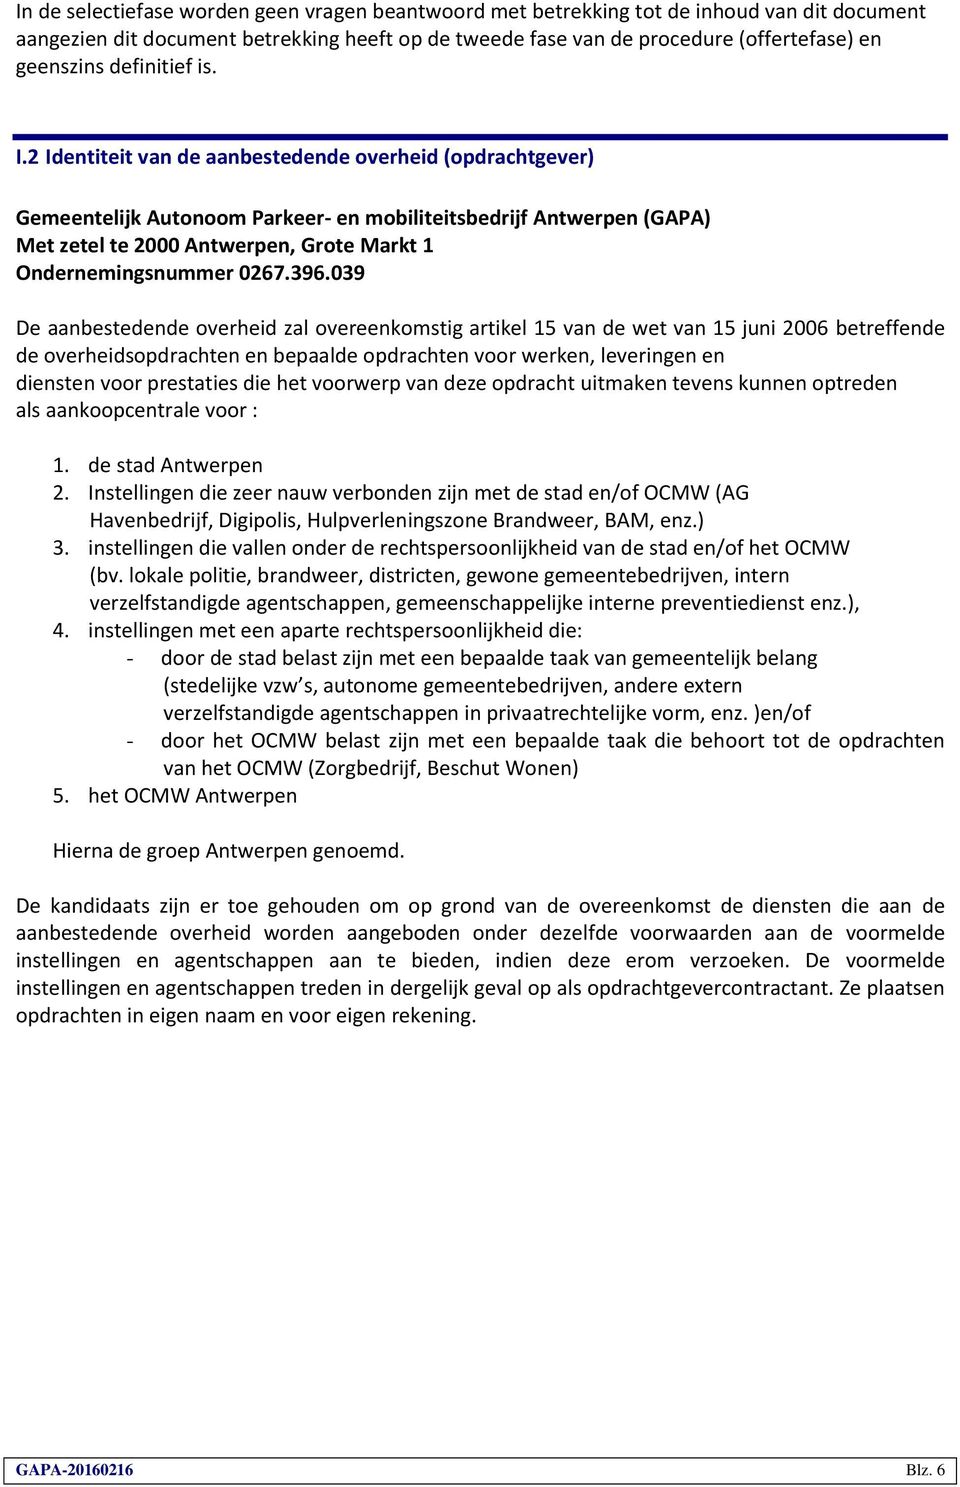 2 Identiteit van de aanbestedende overheid (opdrachtgever) Gemeentelijk Autonoom Parkeer- en mobiliteitsbedrijf Antwerpen (GAPA) Met zetel te 2000 Antwerpen, Grote Markt 1 Ondernemingsnummer 0267.396.